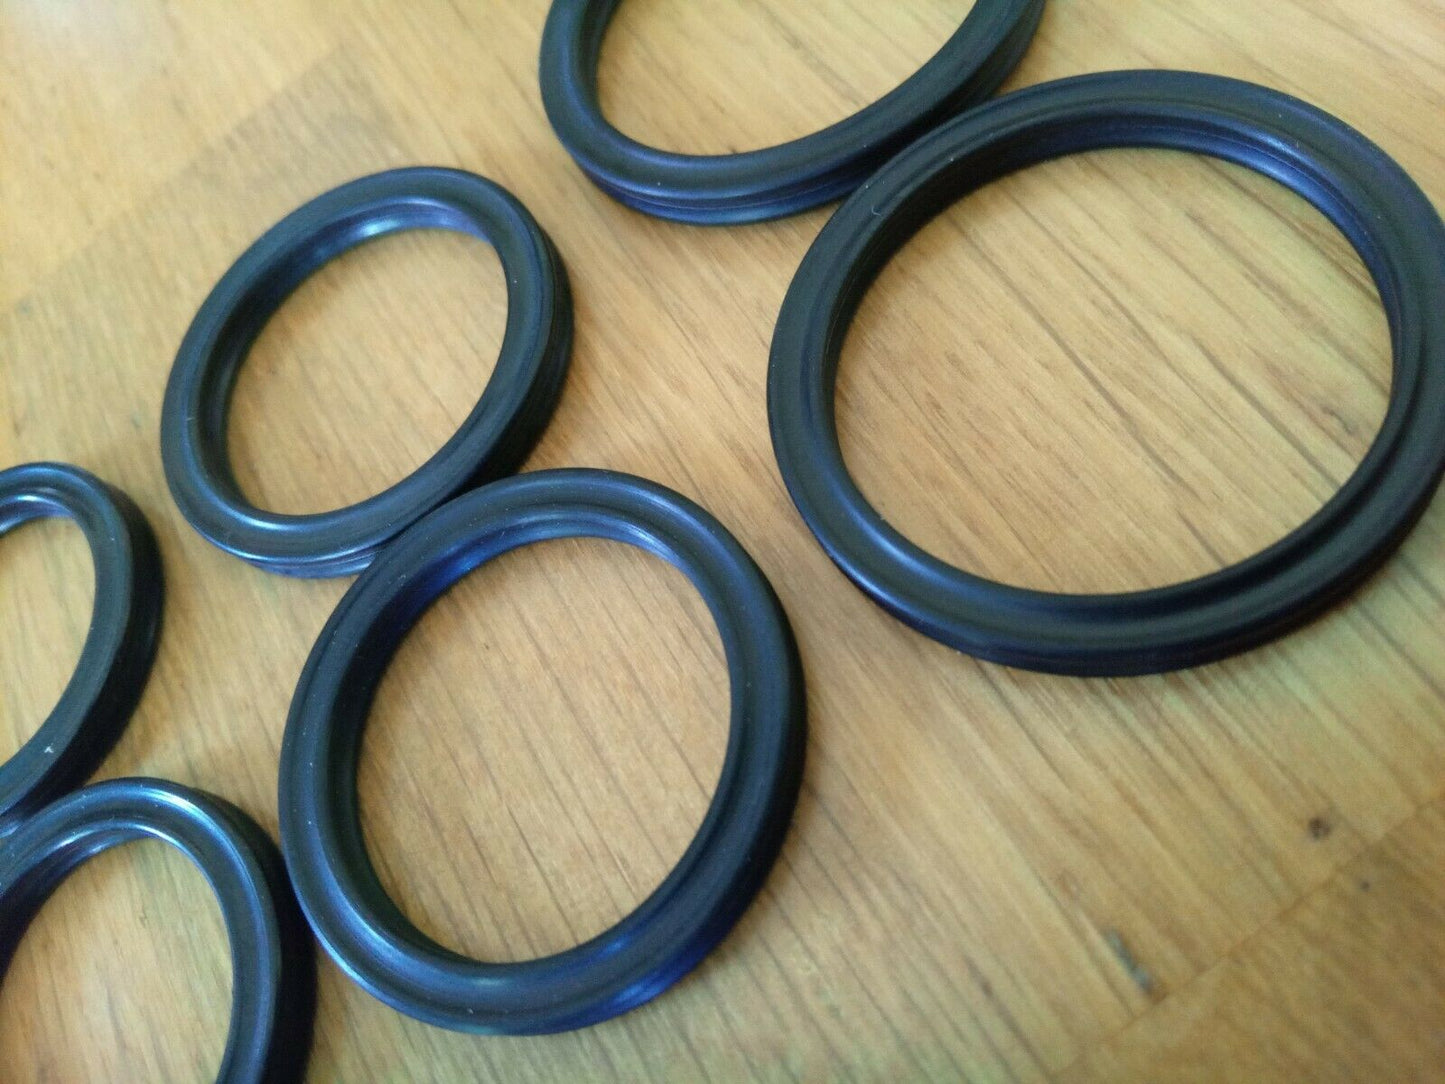 Kango Breaker Piston Rings,Anvil Seals 900/950 Model (All sizes of piston rings)